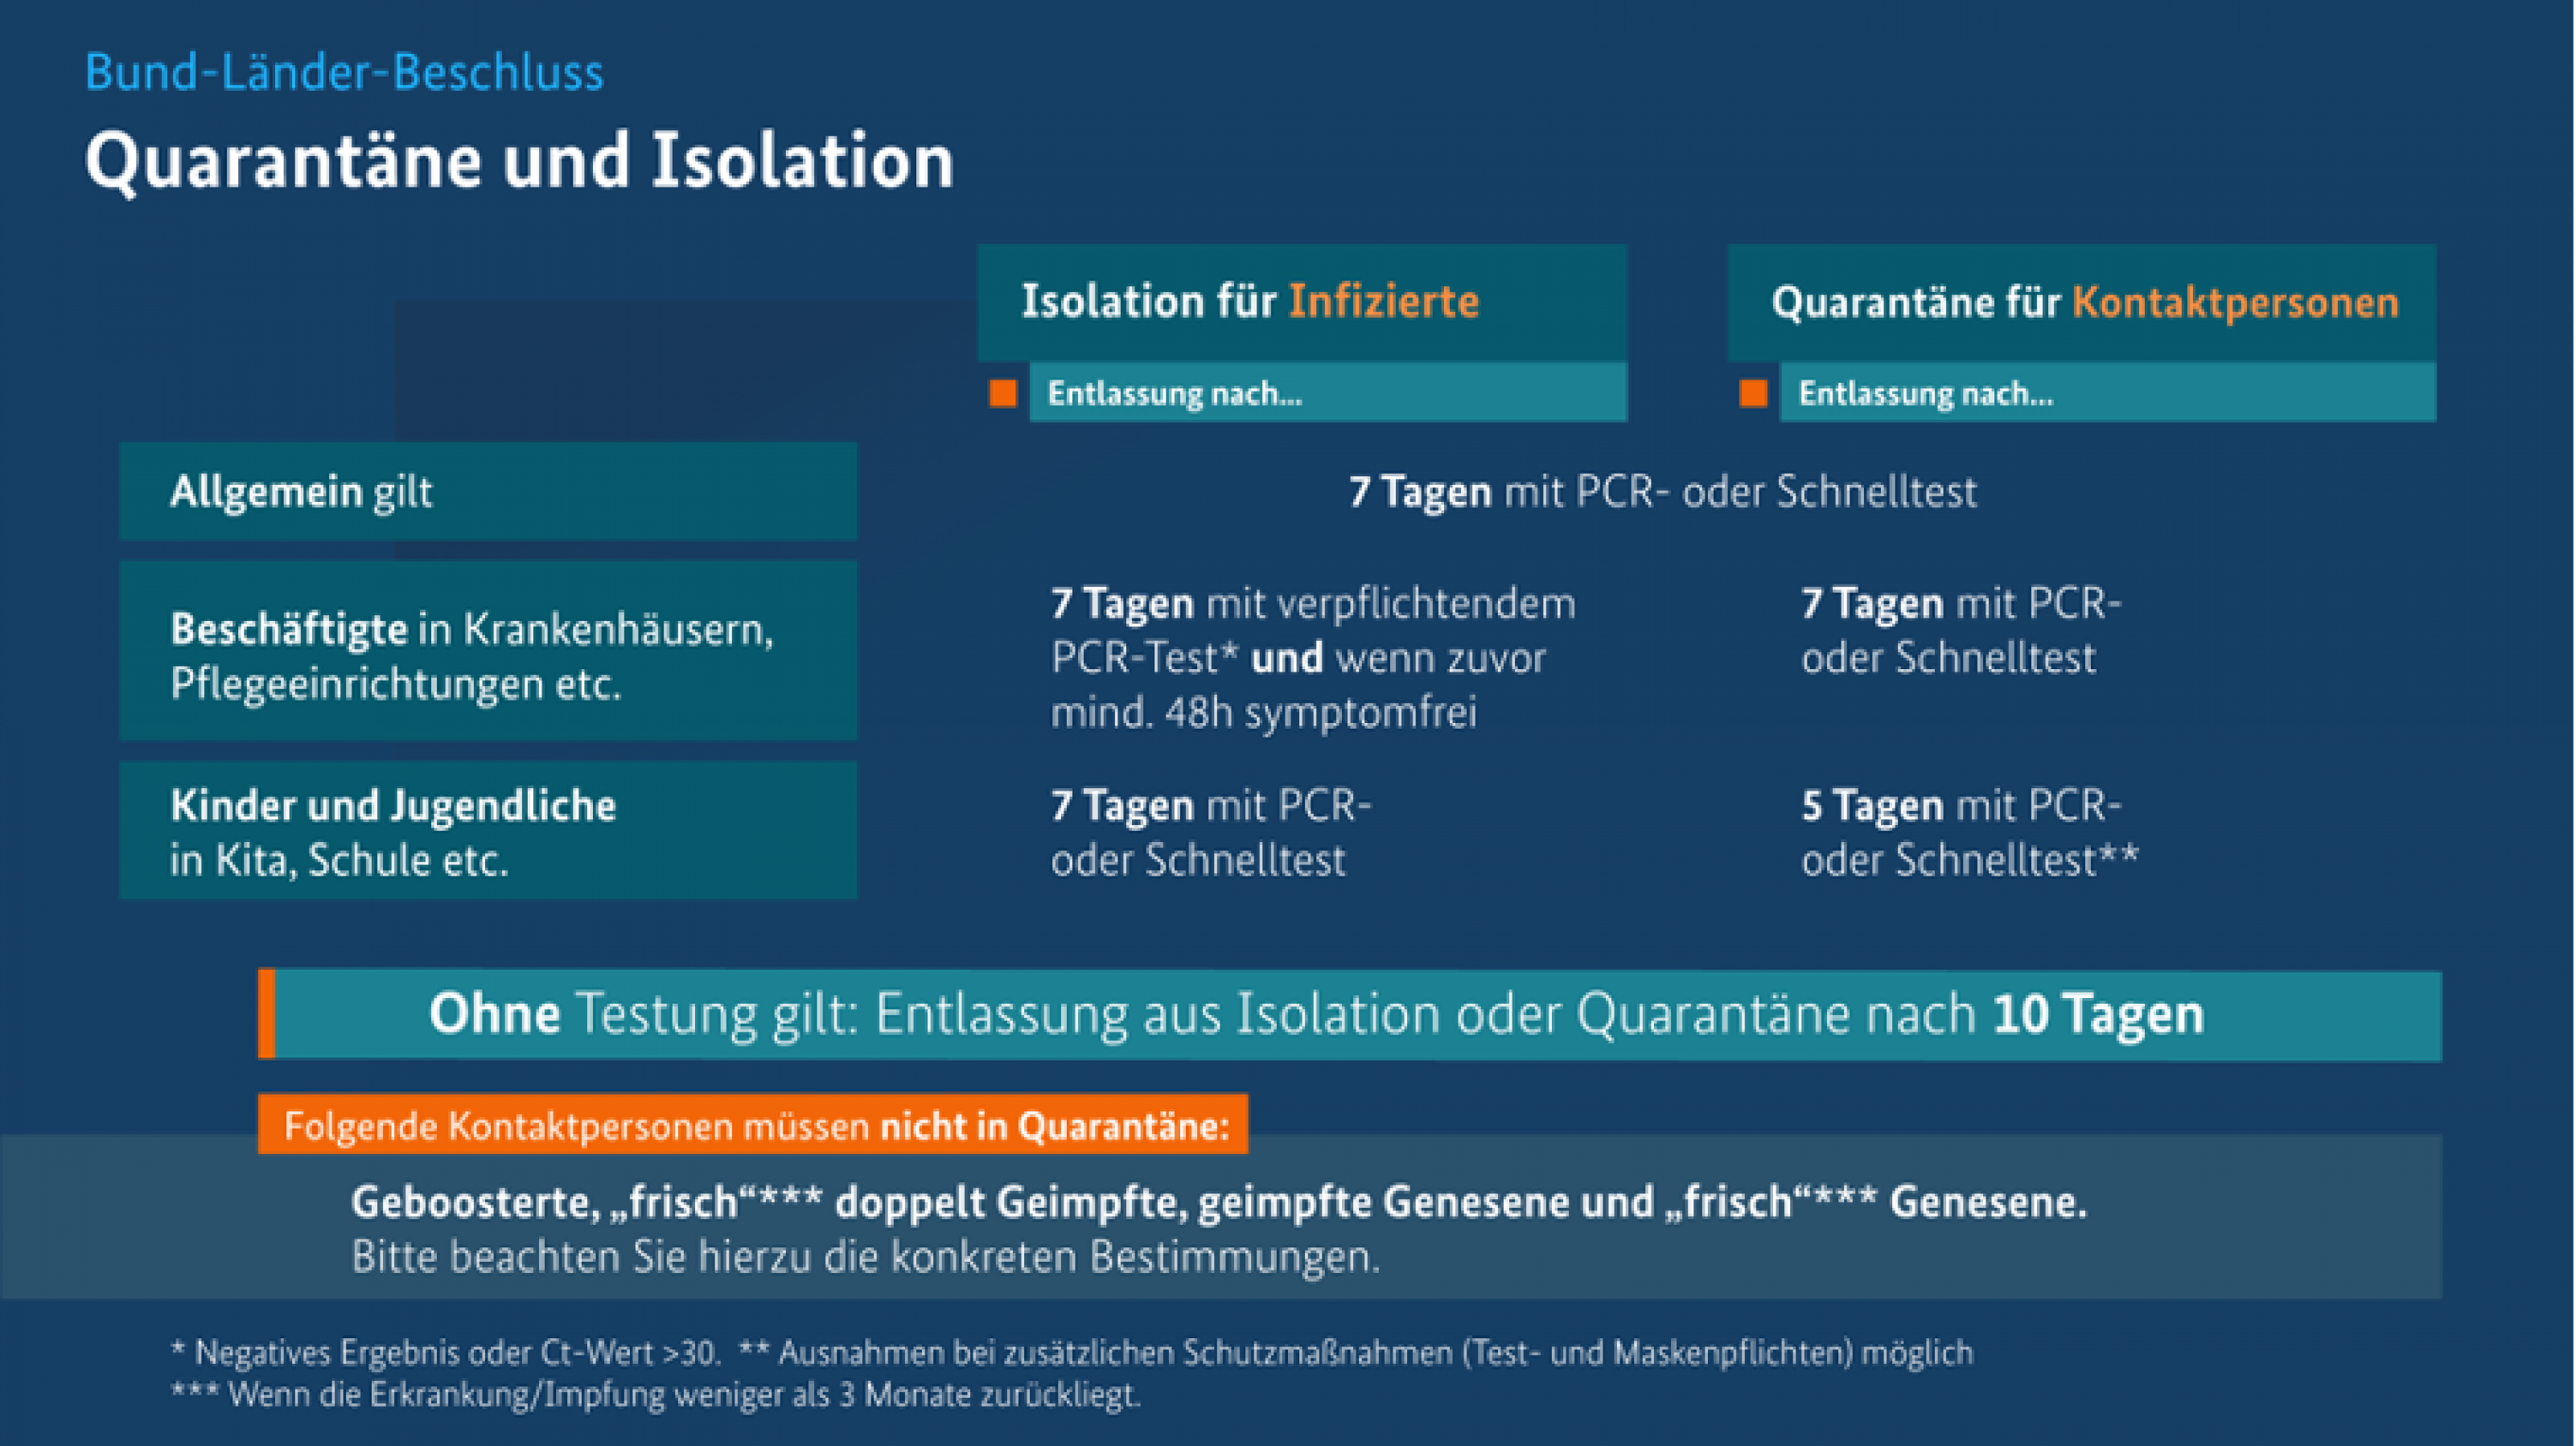 Eine Infografik zeigt die aktuell geltenden Regeln für Quarantäne und Isolation.